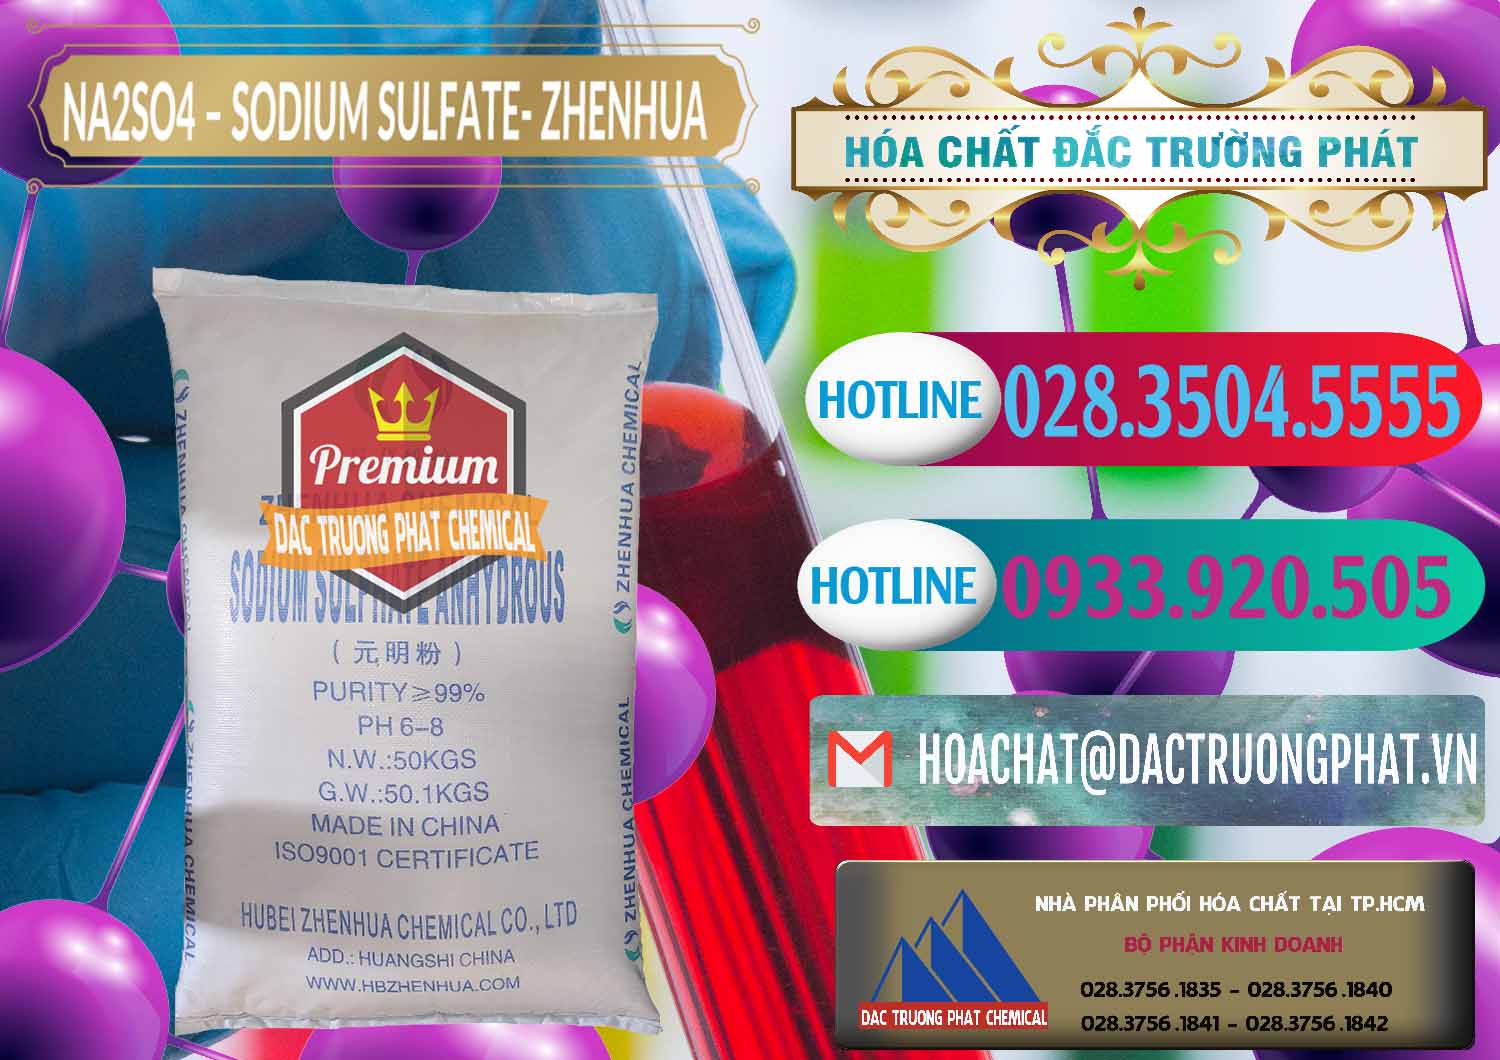 Chuyên phân phối _ bán Sodium Sulphate - Muối Sunfat Na2SO4 Zhenhua Trung Quốc China - 0101 - Công ty cung cấp - kinh doanh hóa chất tại TP.HCM - truongphat.vn